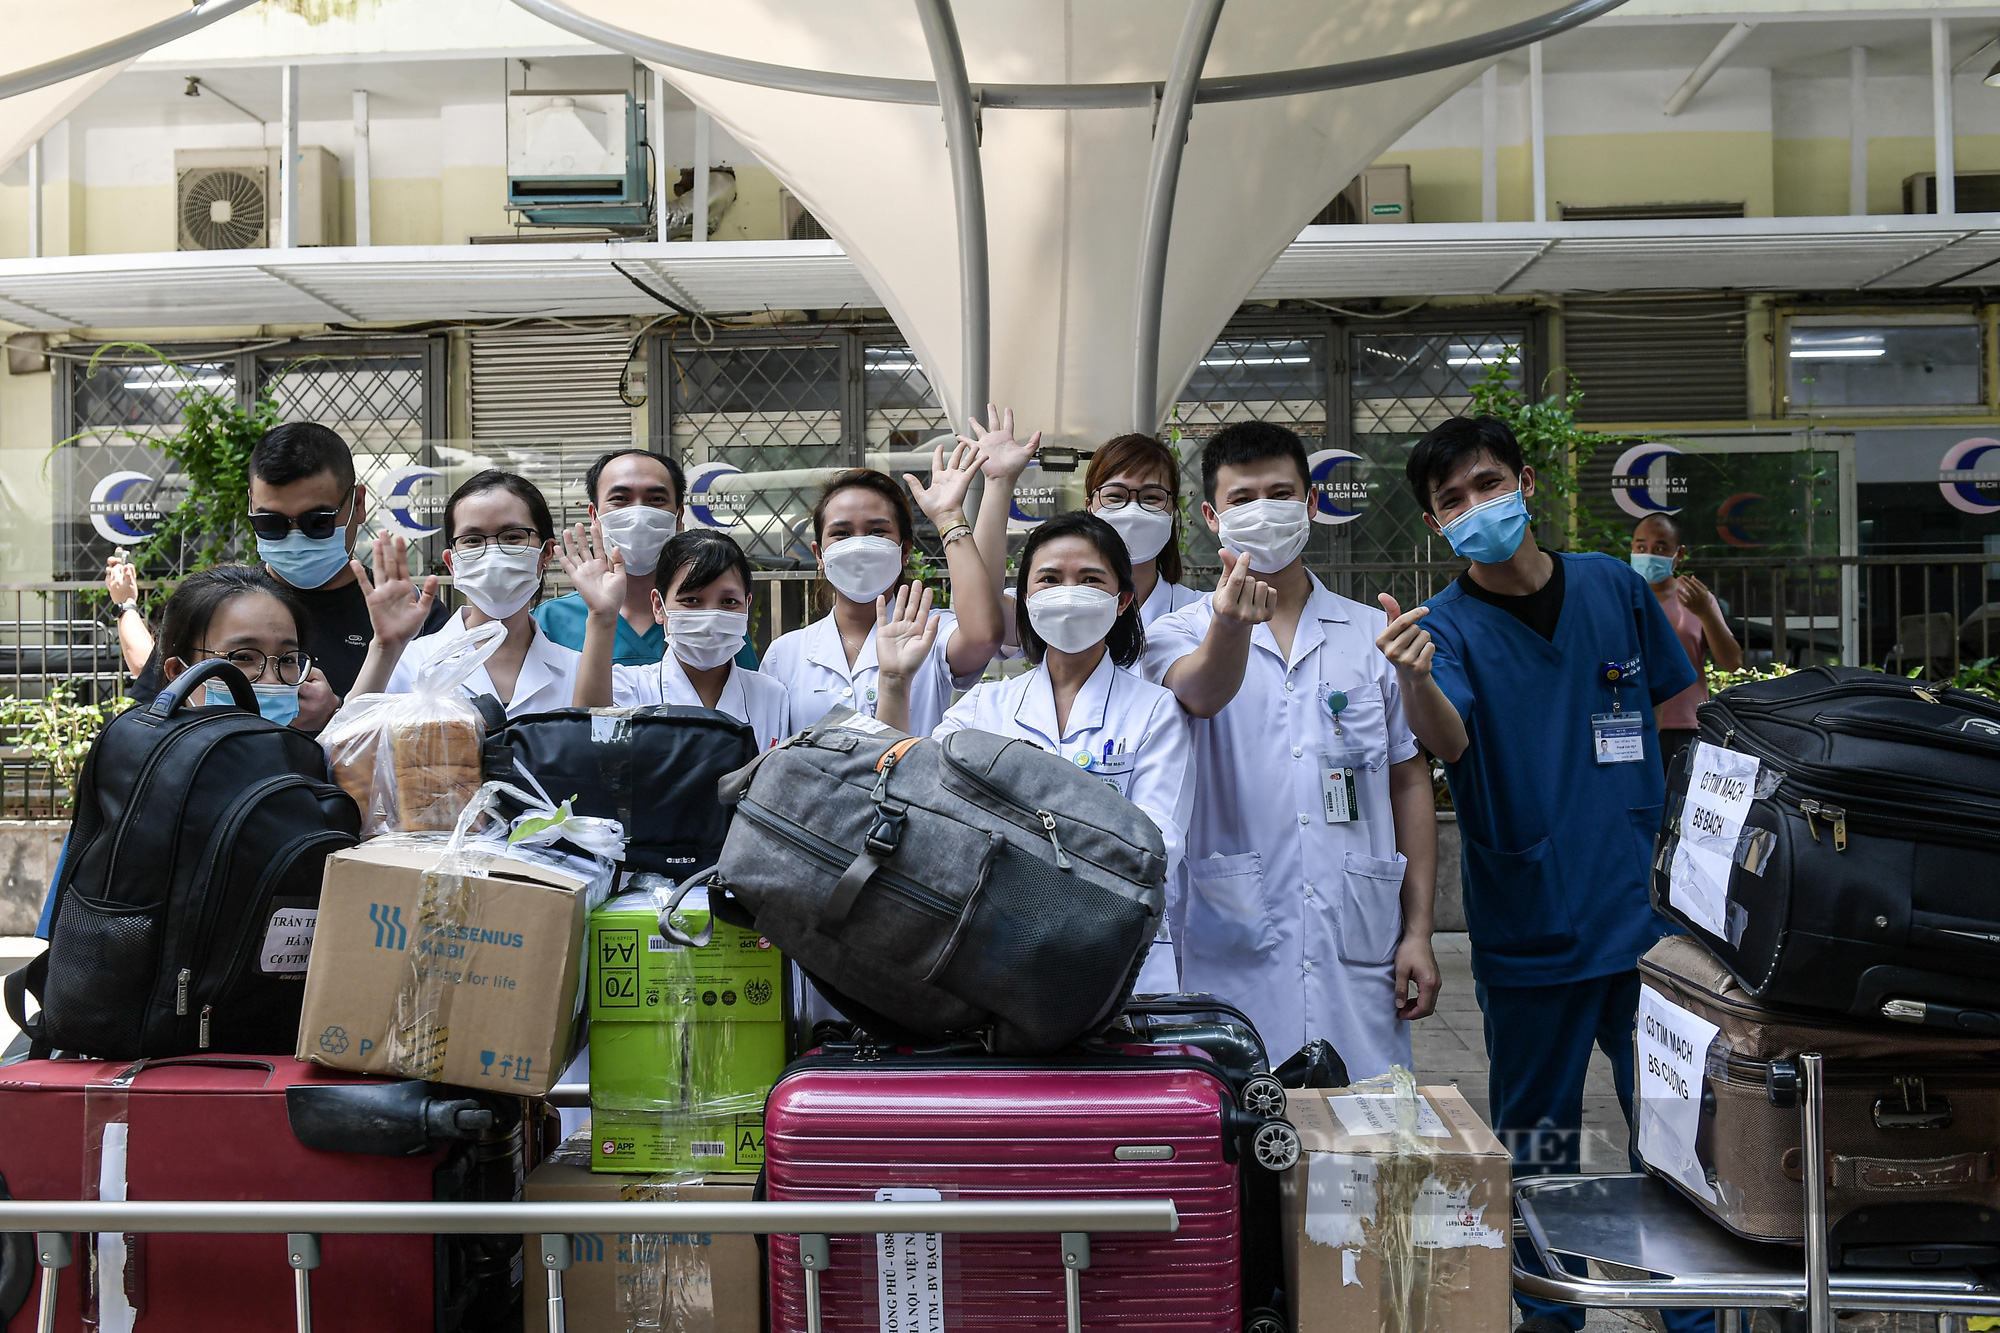 Cán bộ y tế Bệnh viện Bạch mai lên đường hỗ trợ TP. Hồ Chí Minh chống dịch Covid-19 - Ảnh 3.